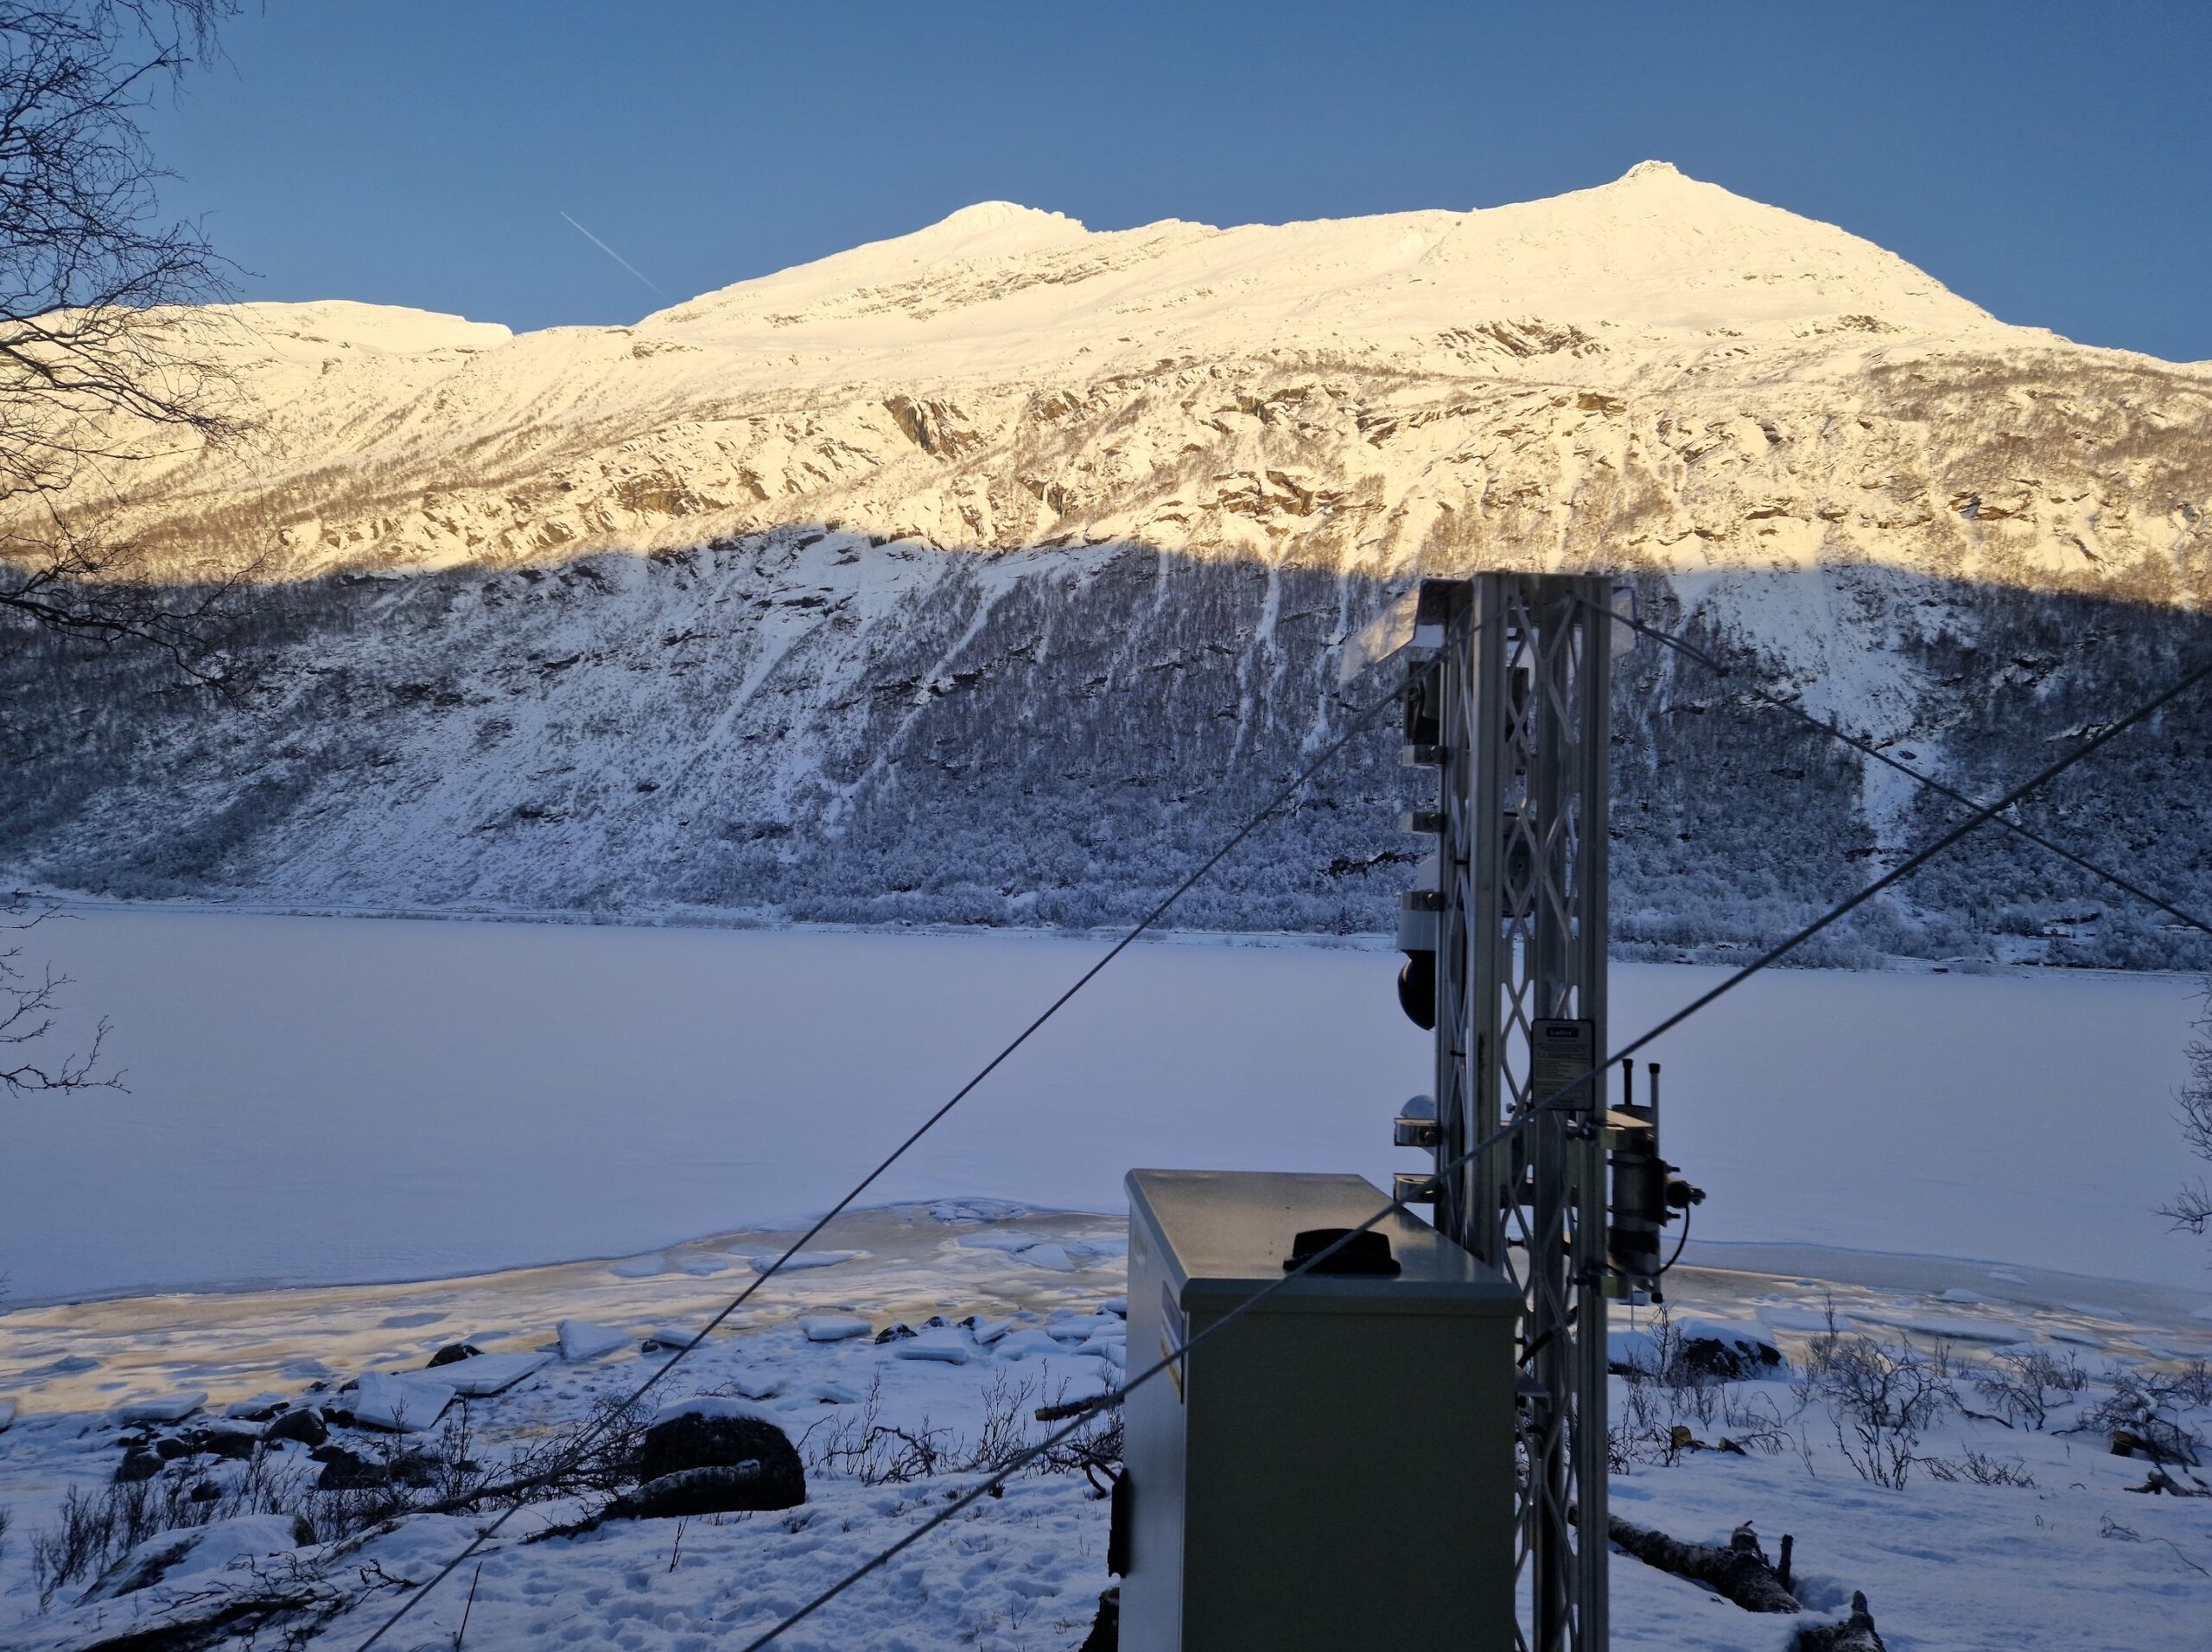 Radar overvåker kontinuerlig og varsler automatisk skred ned mot Beisfjordveien i Nordland.